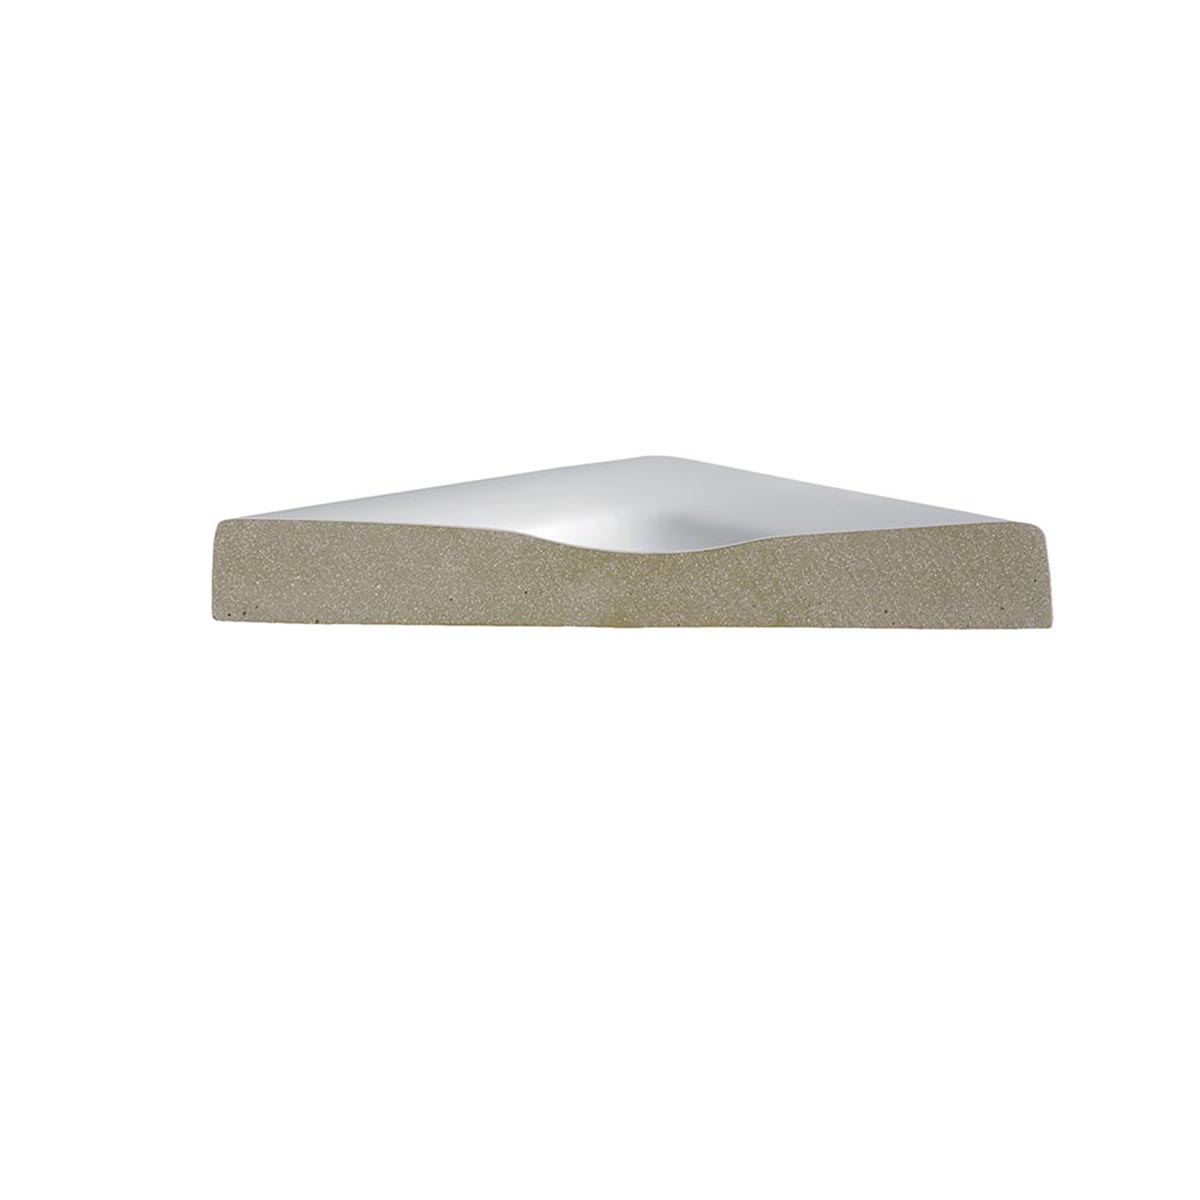 HSK Marmor-Polymer Quadrat Duschwanne superflach-Weiß-90 x 90 cm-ohne AntiSlip-Beschichtung-mit Aquaproof-Dichtset